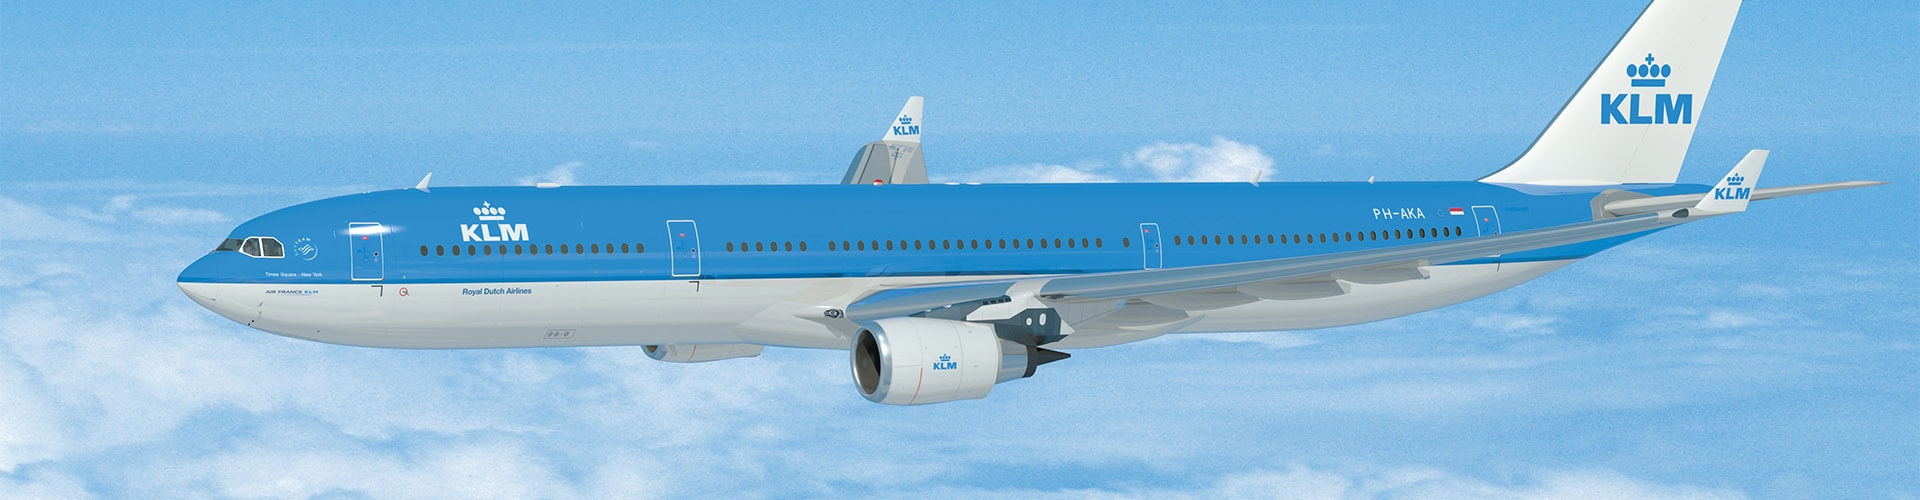 KLMオランダ航空画像3